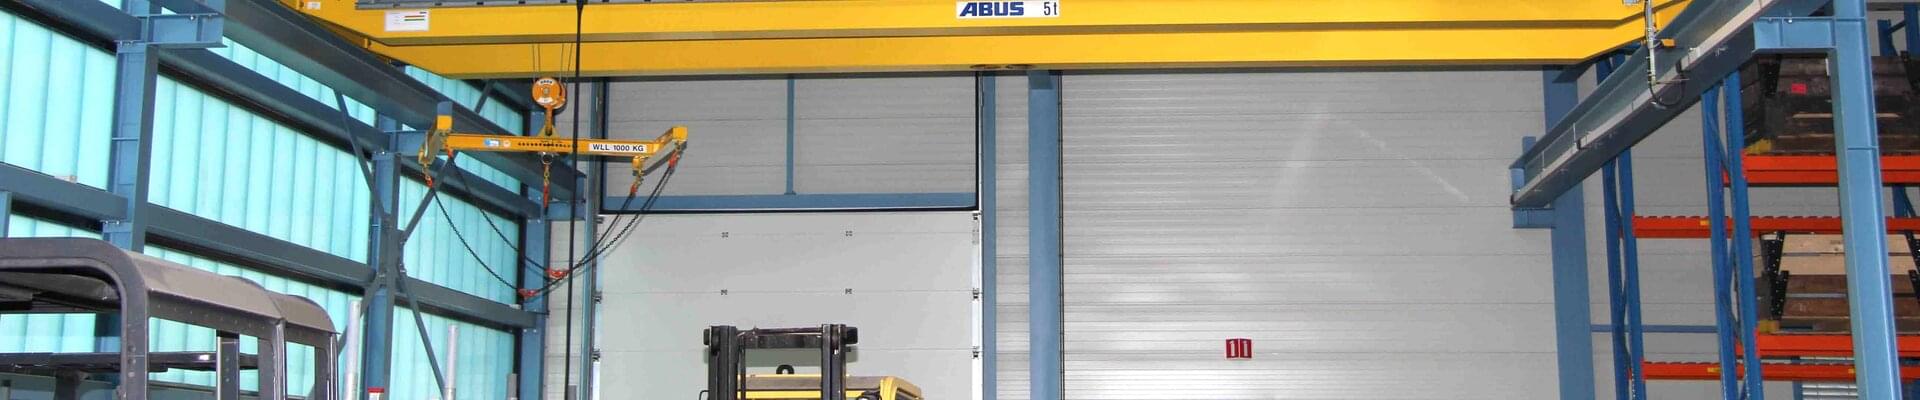 Grúa ABUS con una capacidad de carga de 5 t en la empresa NedTrain Componenten de los Países Bajos